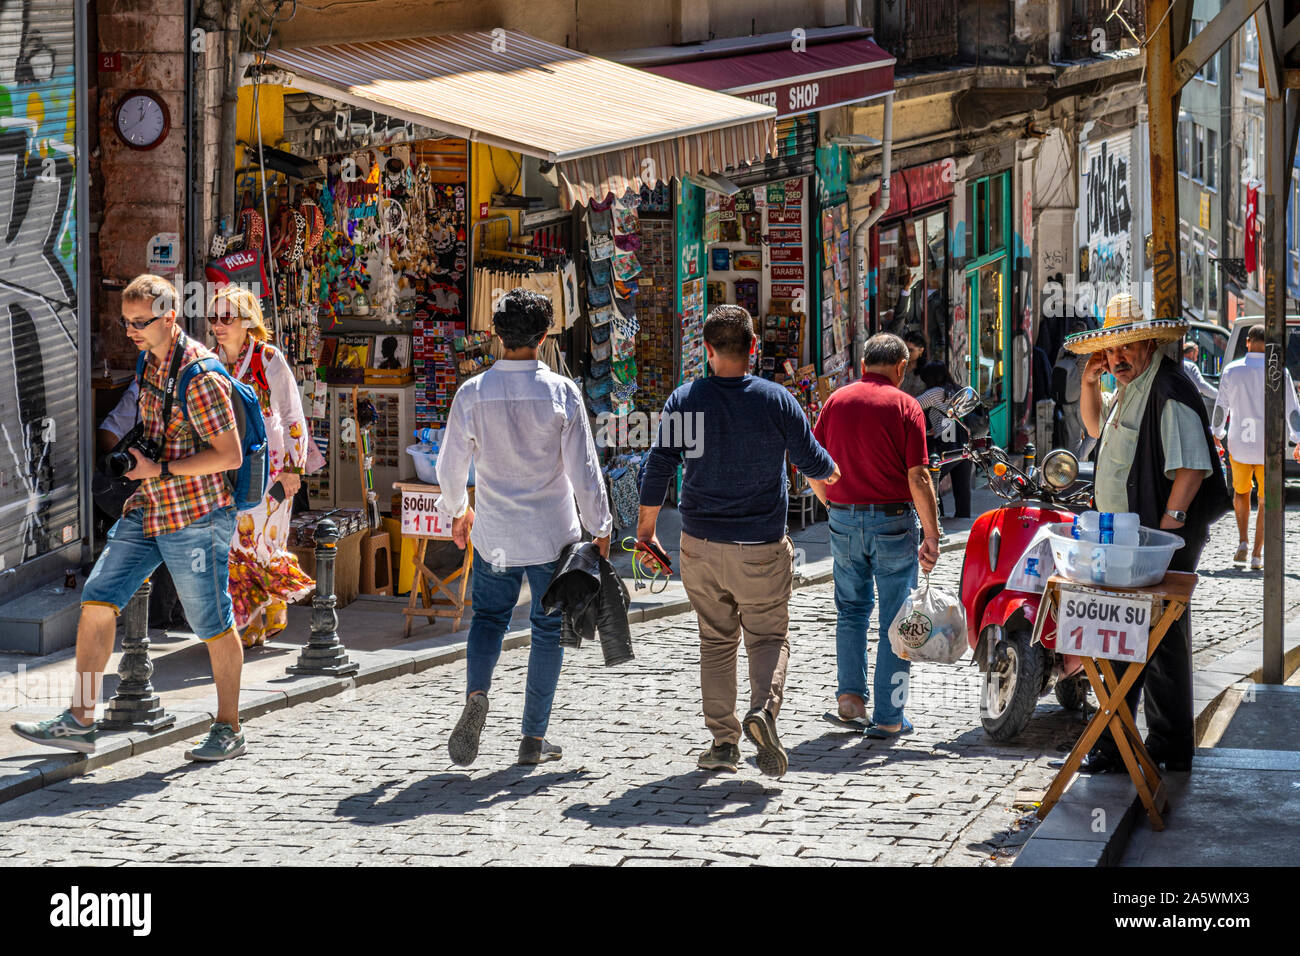 Un Turk vende acqua imbottigliata sul marciapiede vicino a negozi di souvenir e colorati negozi di articoli da regalo in zona collinare in quartiere di Galata di Istanbul in Turchia Foto Stock